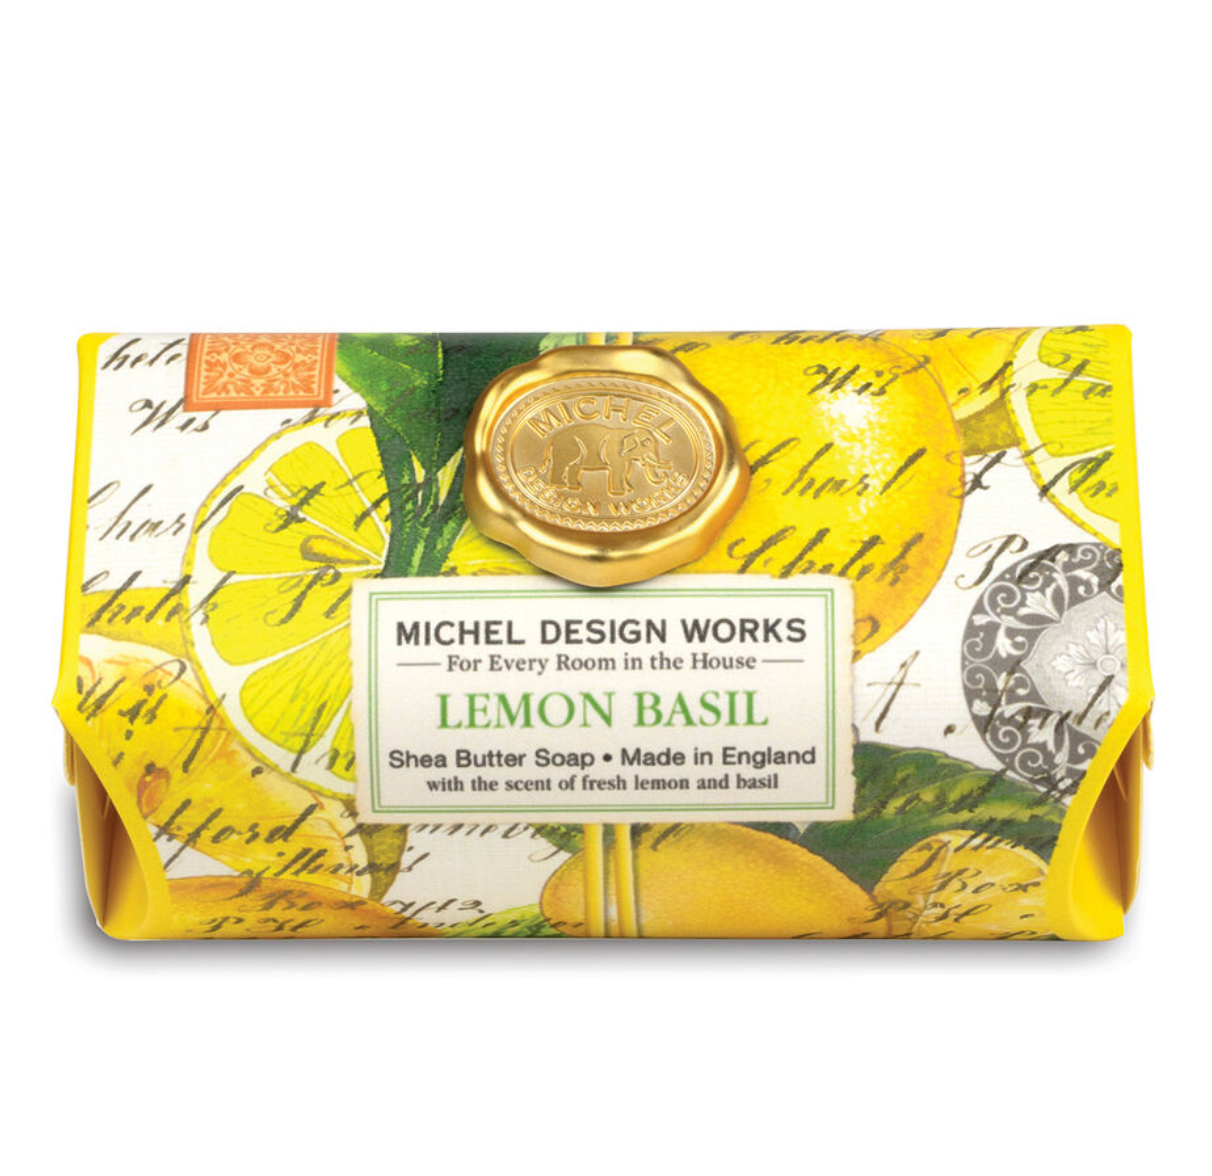 Lemon Basil Bath Soap Bar